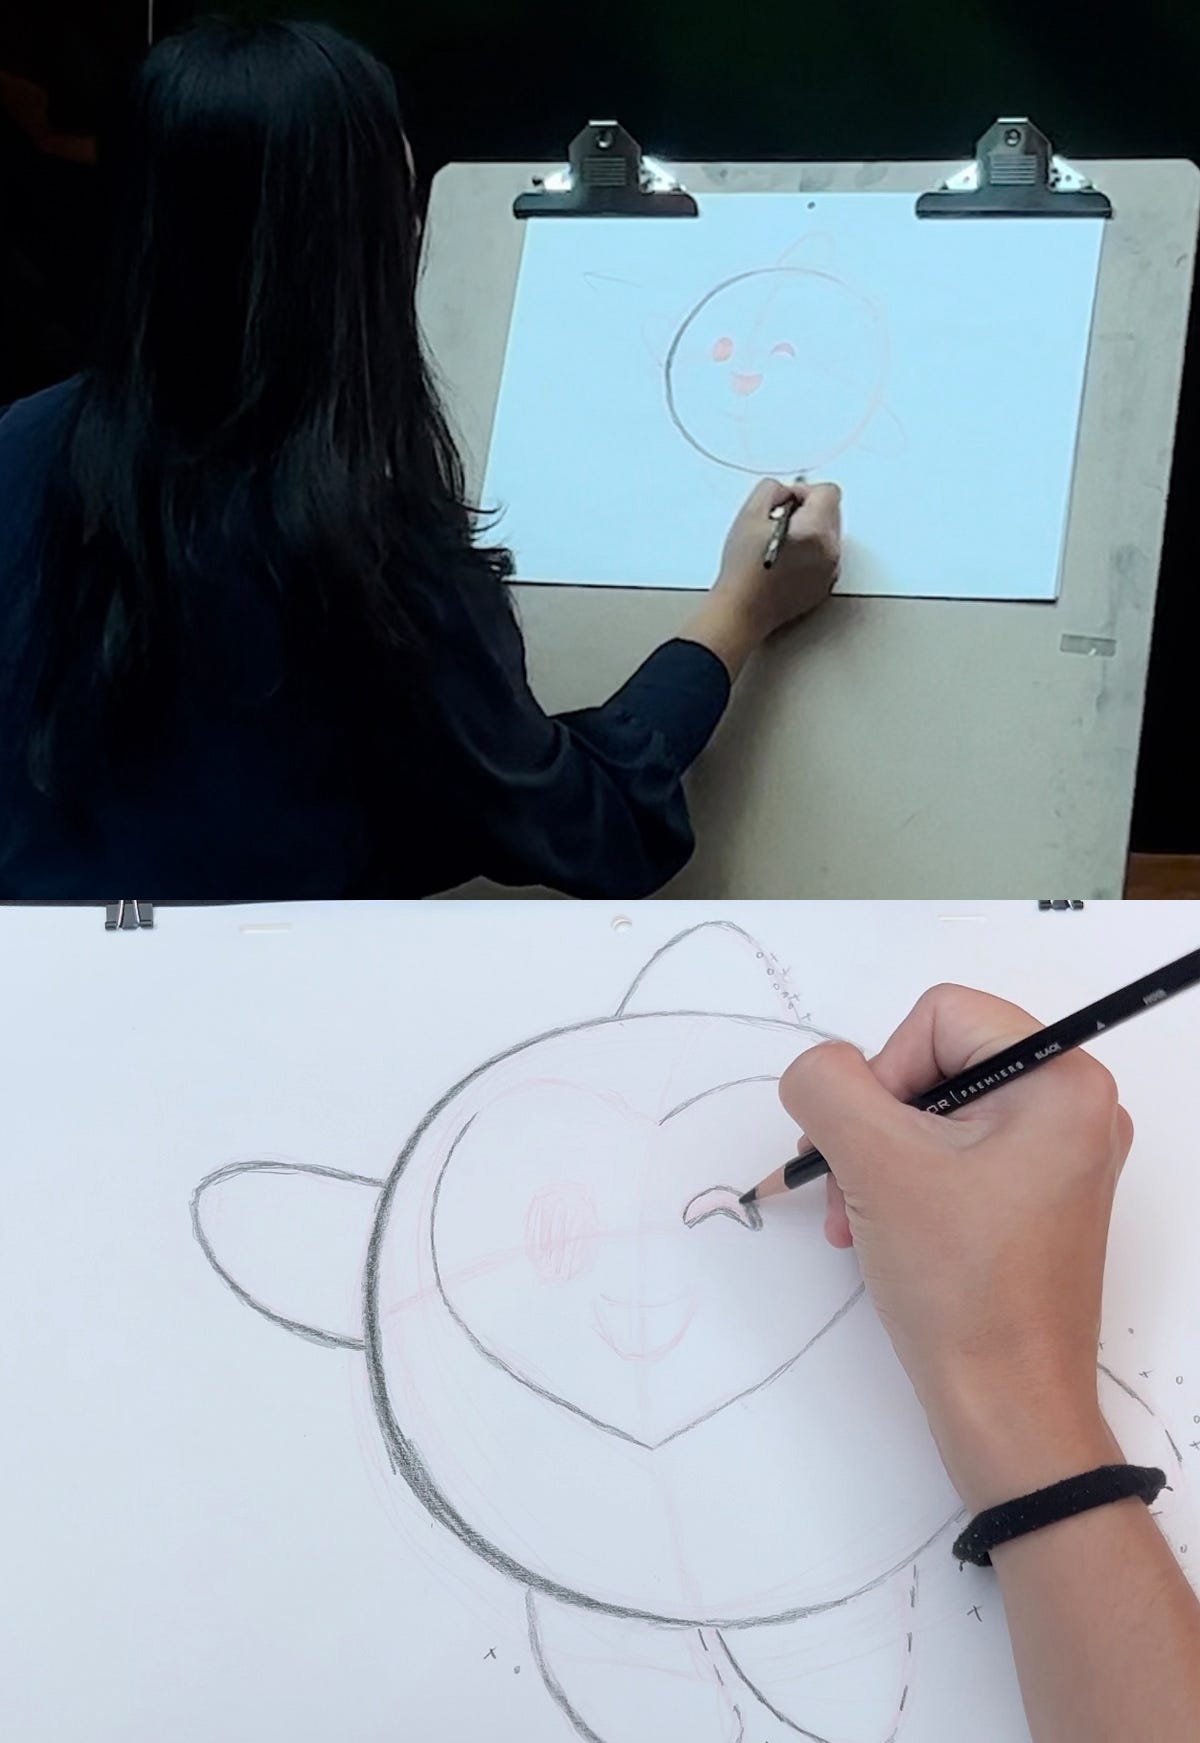 Sastrawinata-Lemay demonstriert im oberen Bild das Zeichnen kurzer Striche auf Star, während Kirsten Acunas rechte Hand daran arbeitet, ihre eigene Zeichnung auszufüllen.